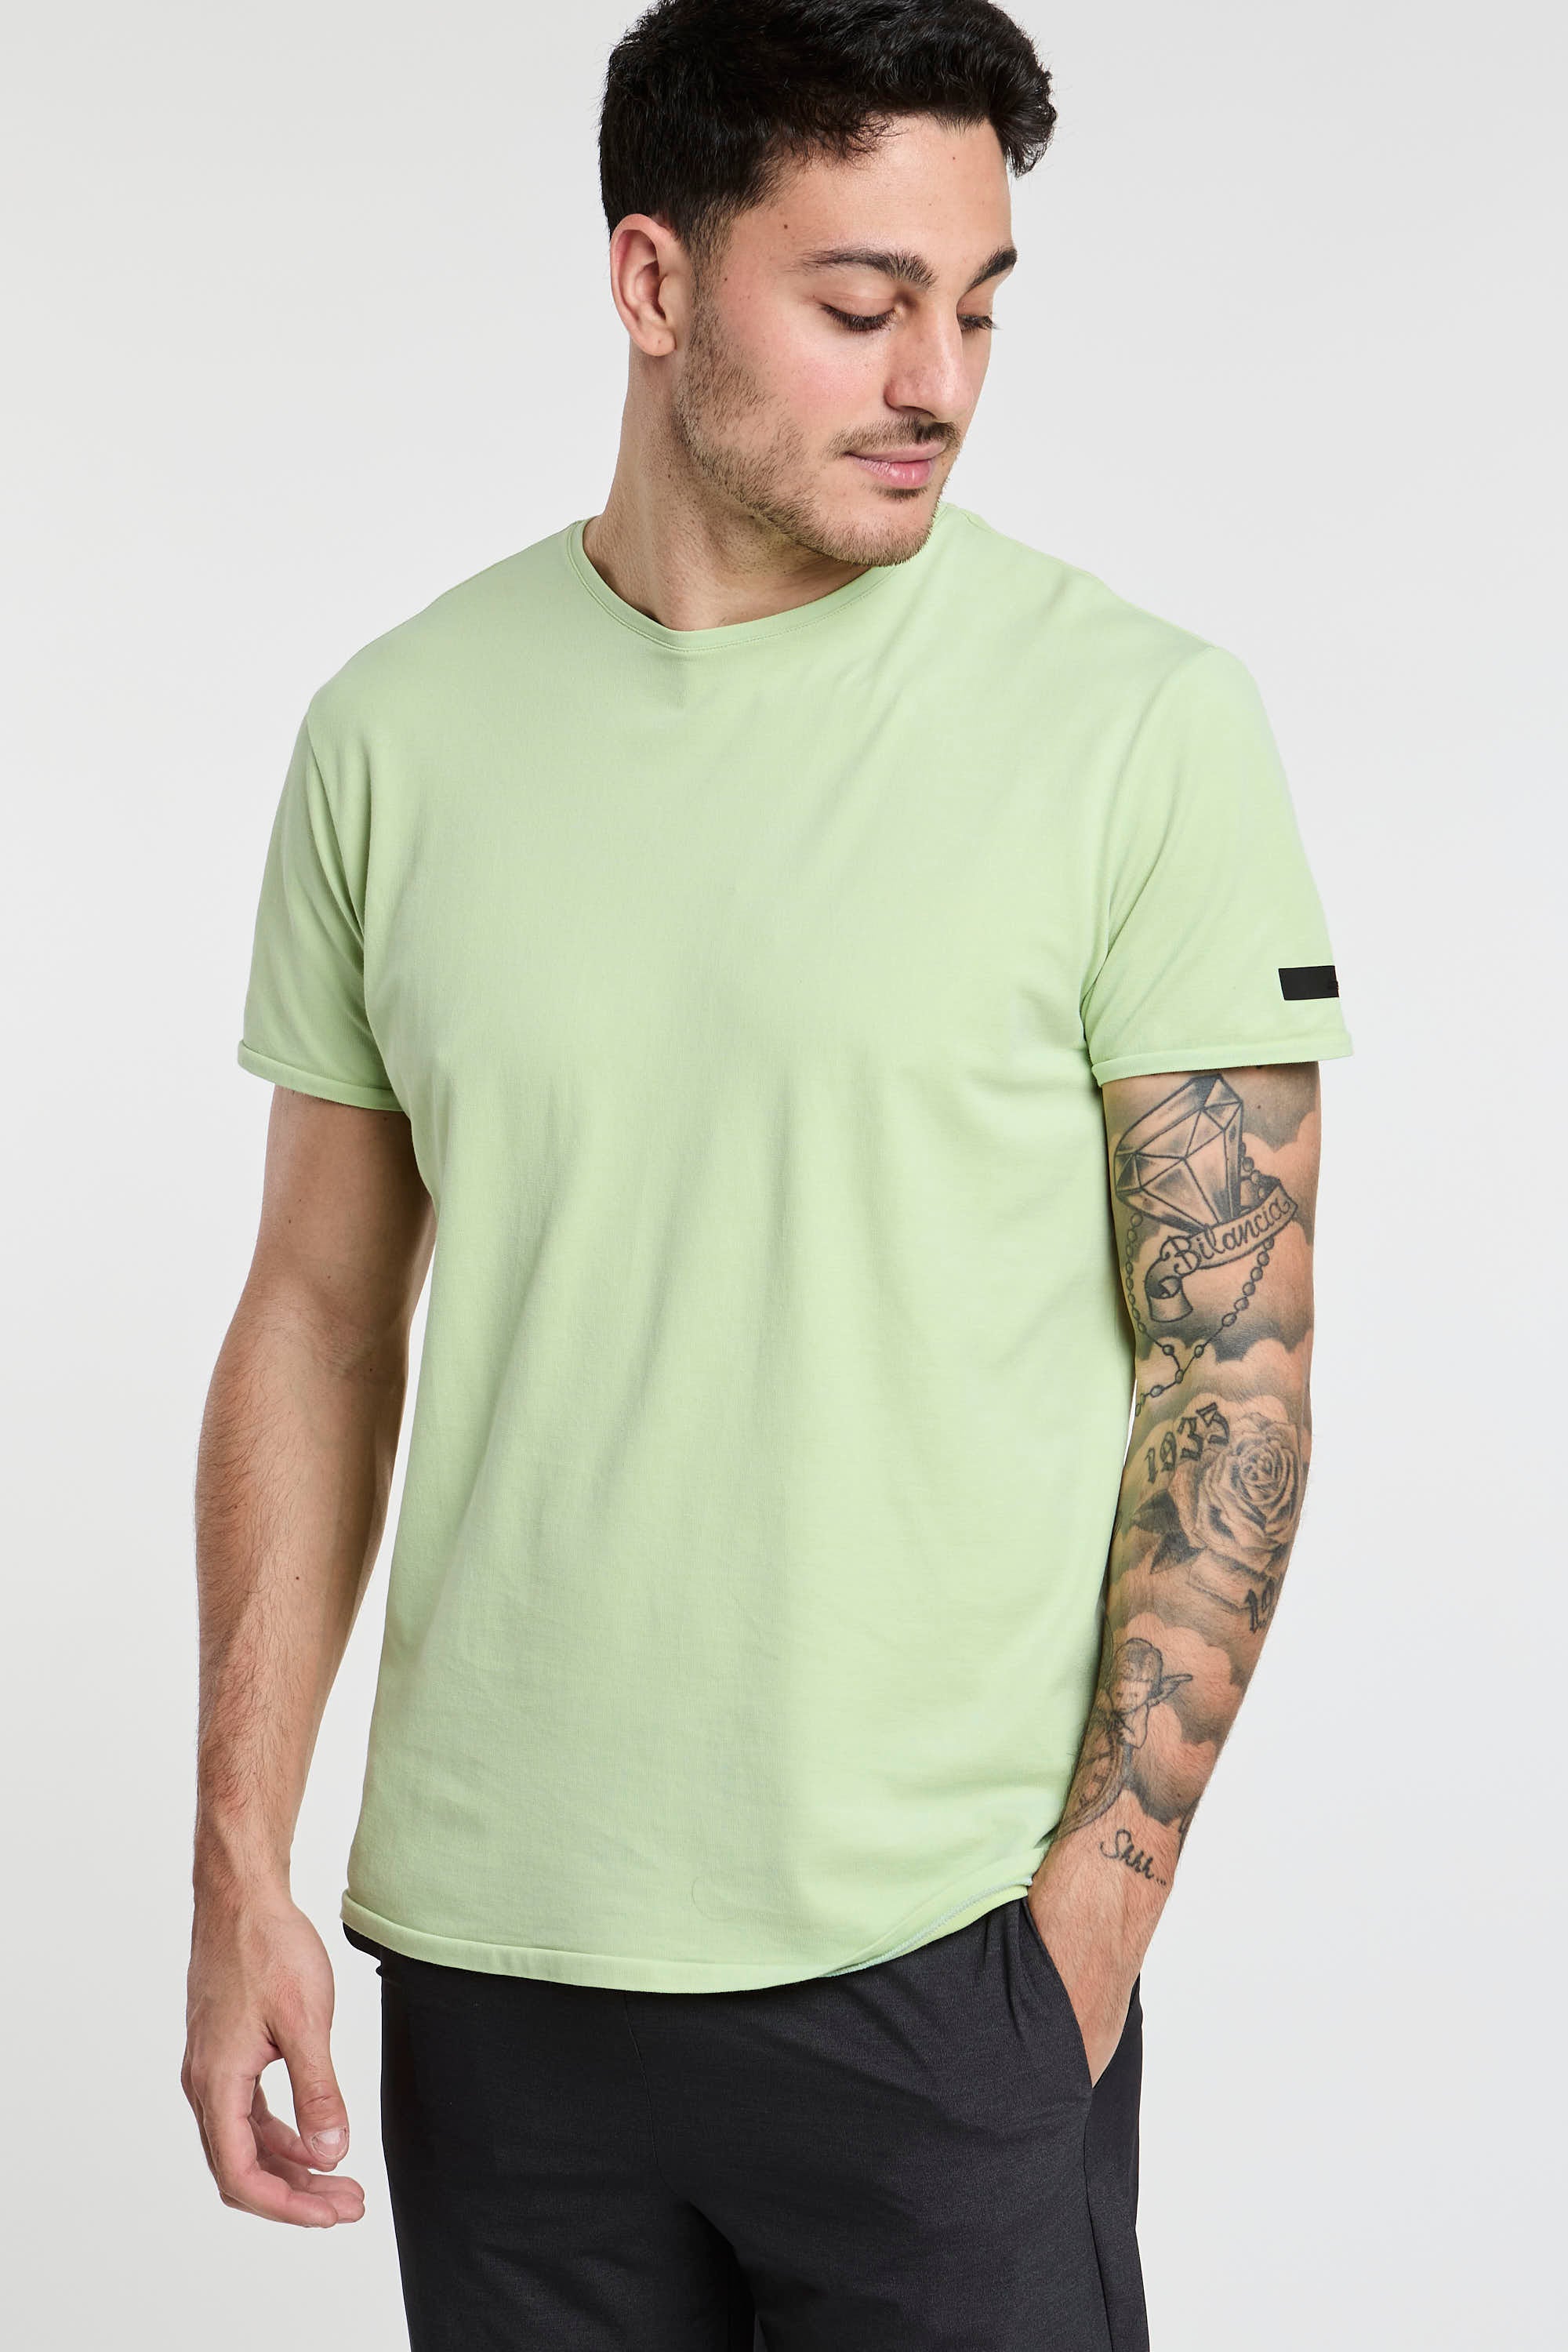 RRD T-Shirt Doticon Piquet Elastisch Baumwolle/Nylon Farbe Minze-1